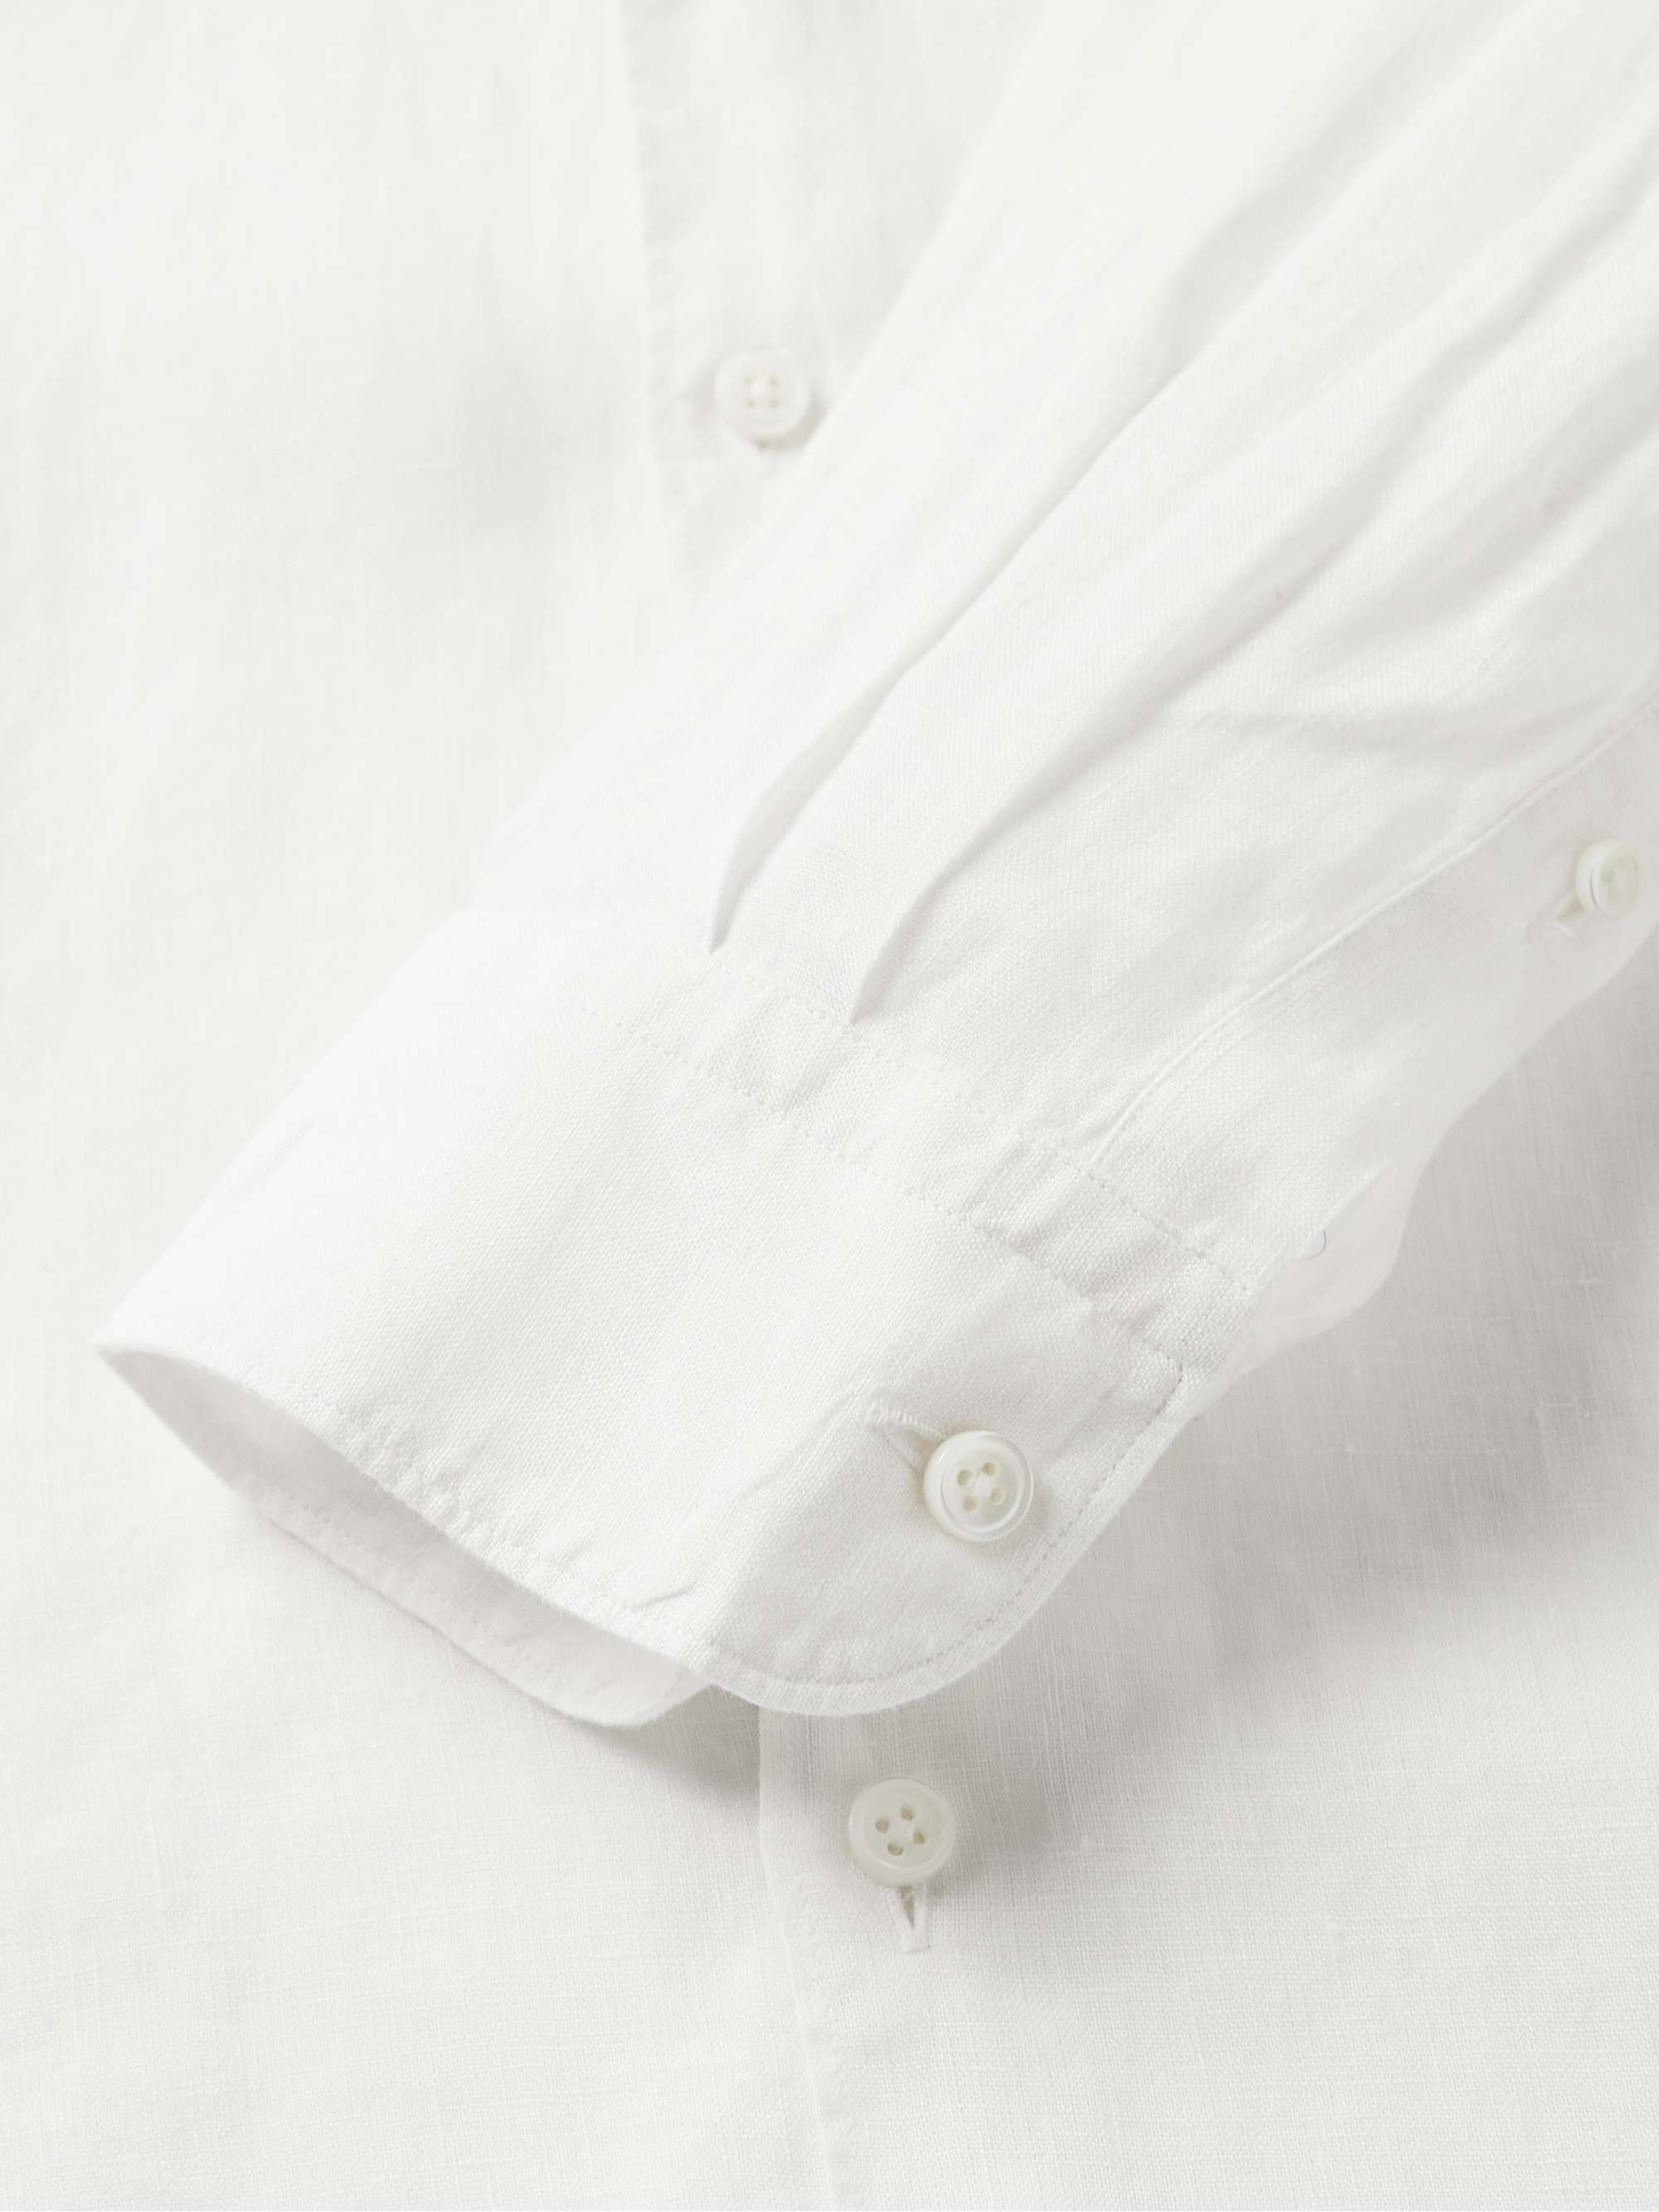 ZEGNA Linen Shirt